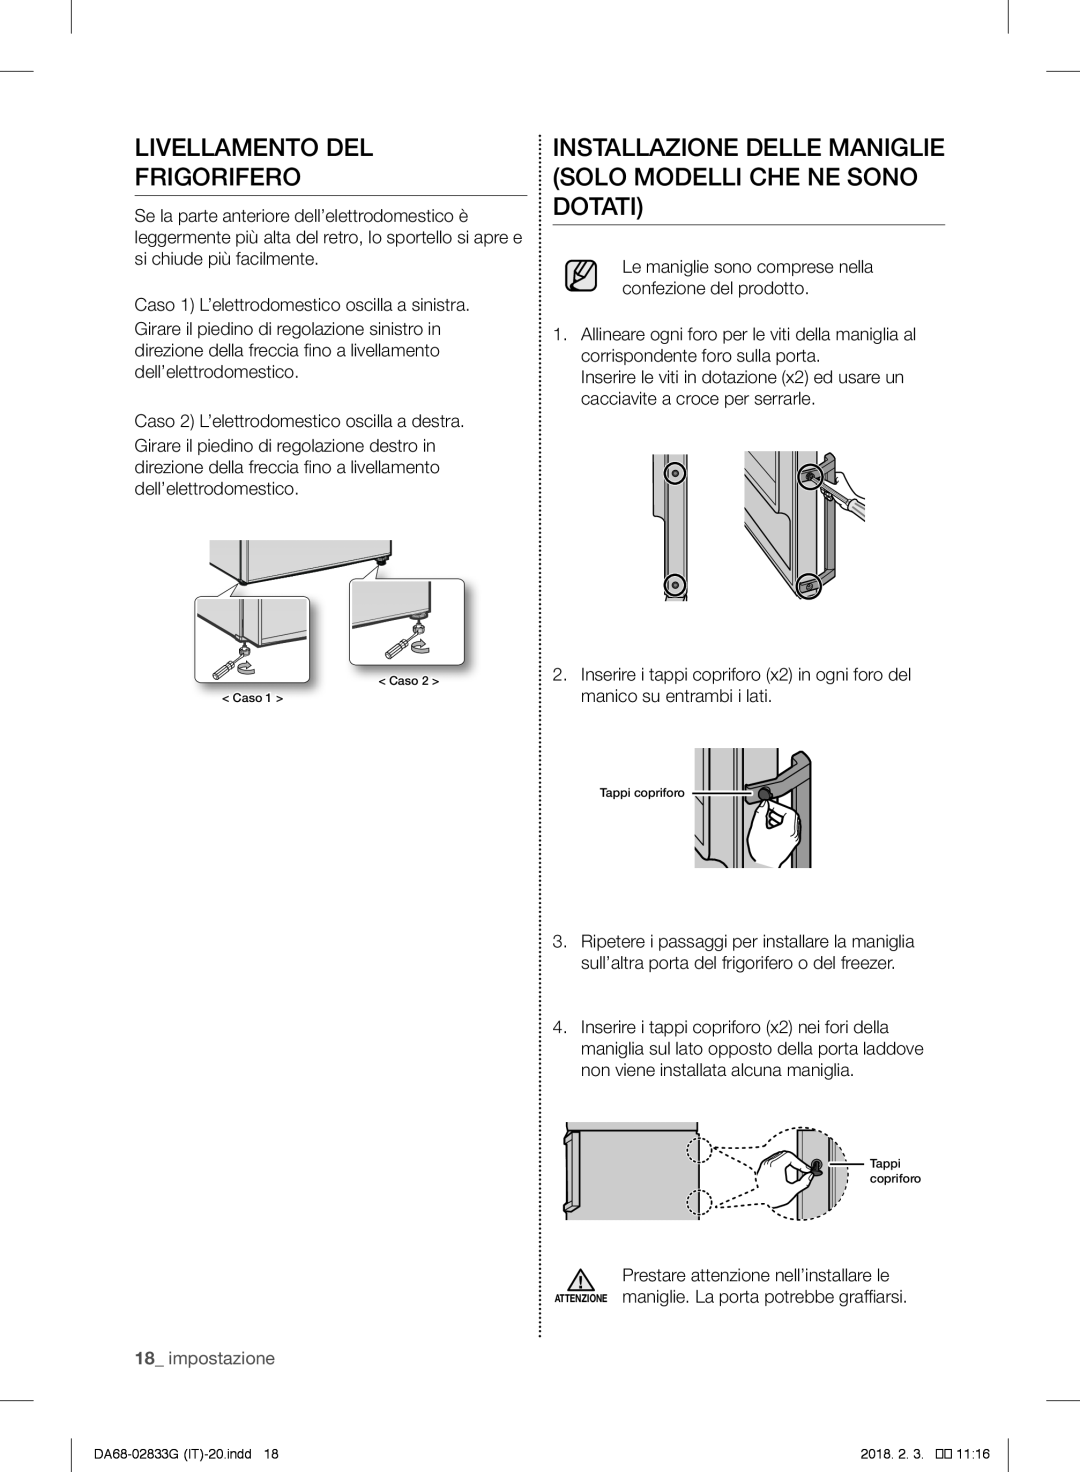 Samsung RB31FSRNDSA/EF manual Livellamento Del Frigorifero, Installazione Delle Maniglie Solo Modelli Che Ne Sono Dotati 